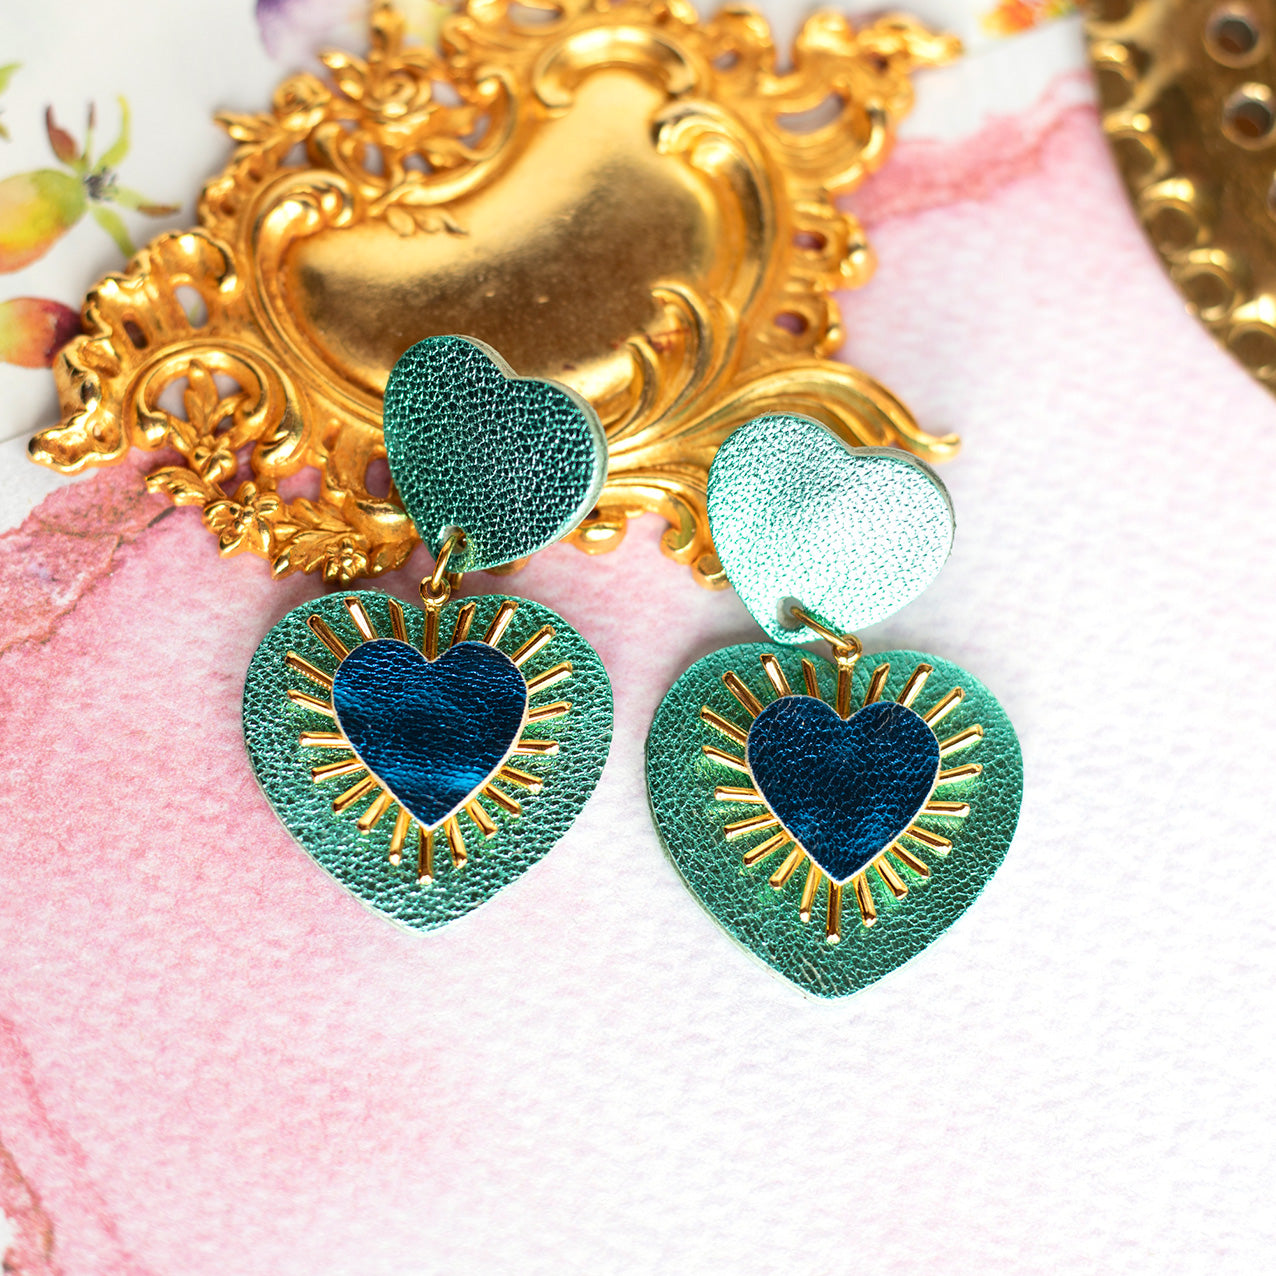 Boucles d'oreilles Sacré Coeur cuir turquoise métallisé et bleu roi